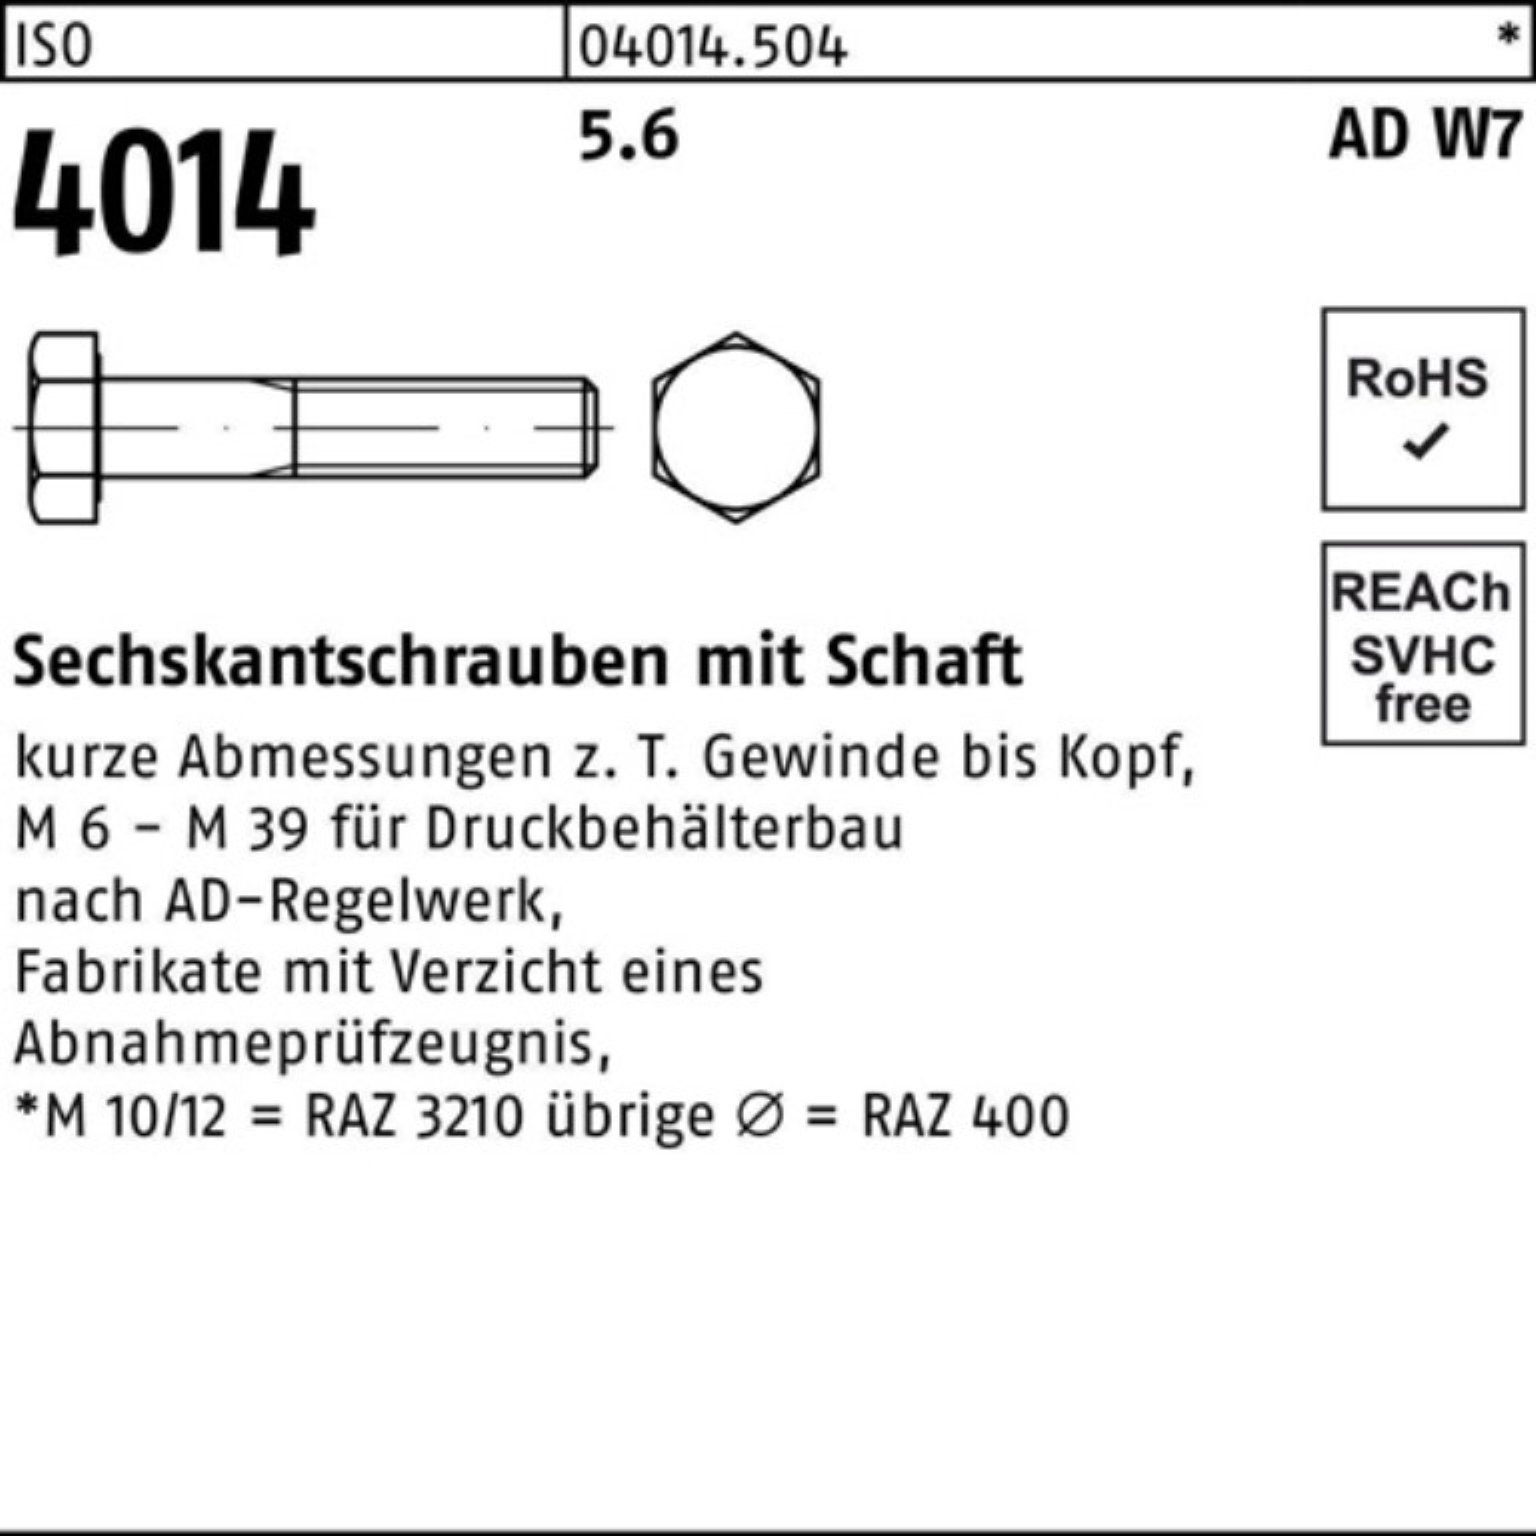 Sechskantschraube 5.6 Bufab 1 ISO Schaft Stück M30x 150 100er W7 Sechskantschraube Pack 4014